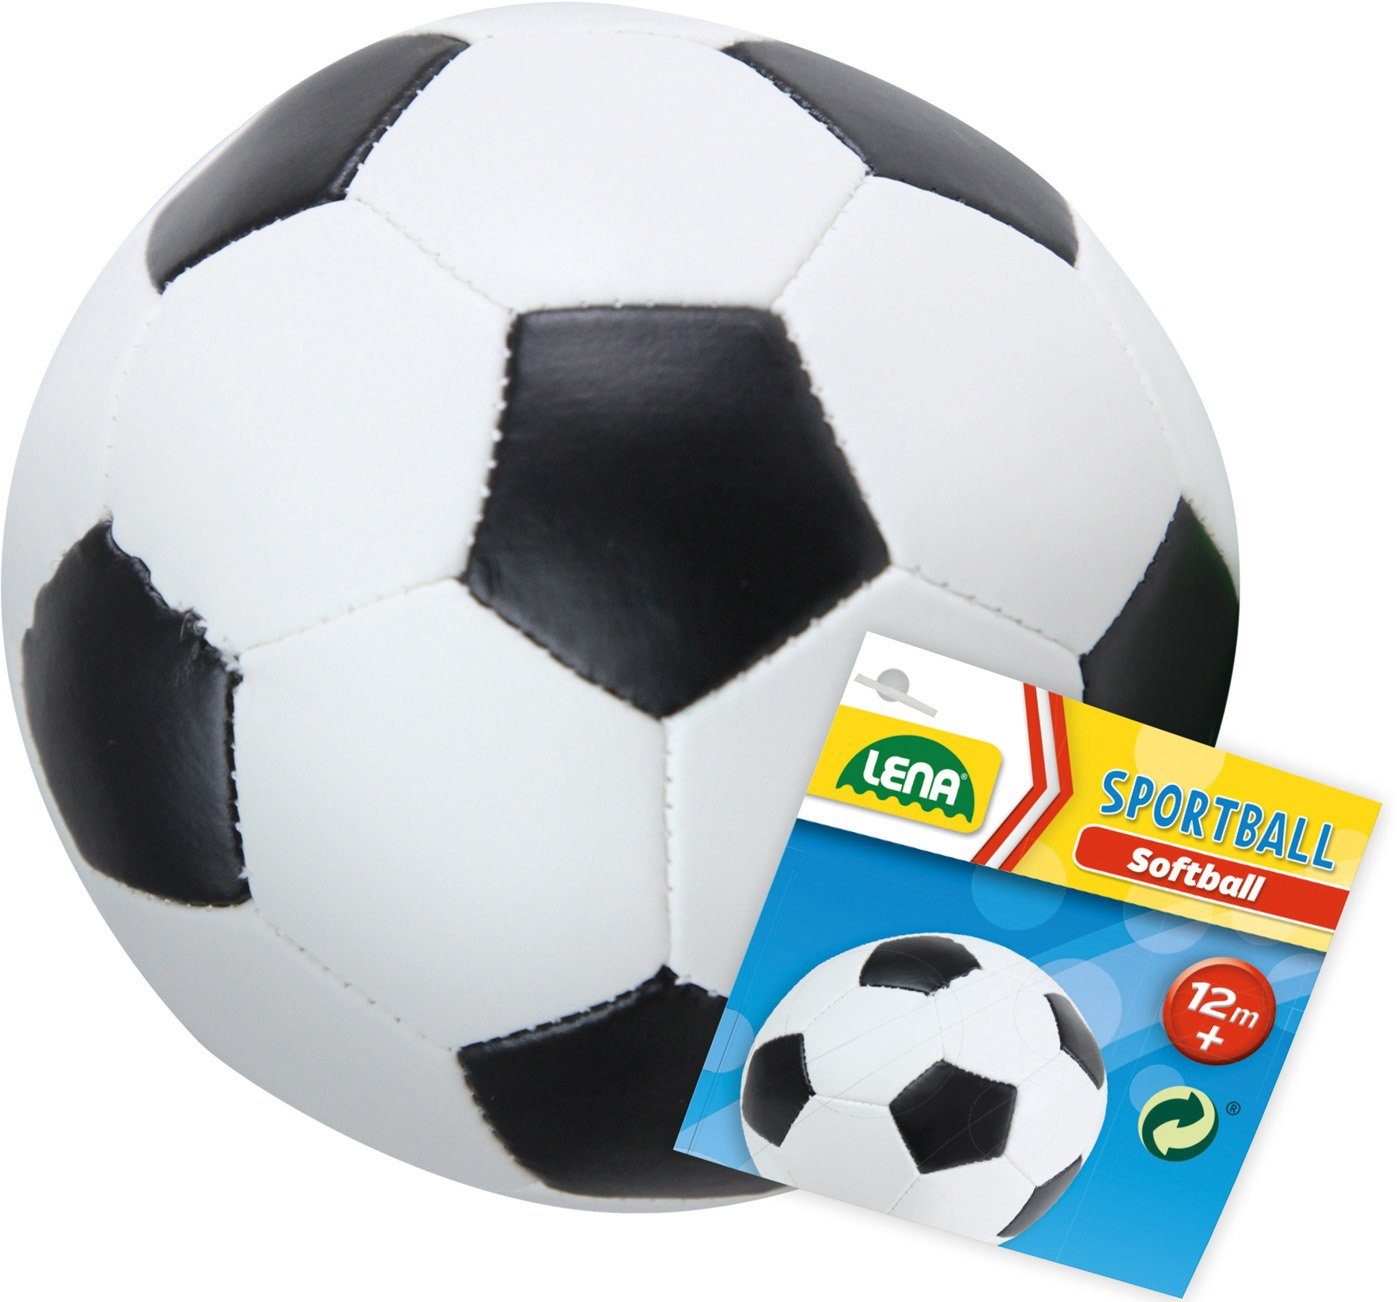 Soft-Fußball Softball Europe schwarz/weiß, 18 in cm, Lena® Made